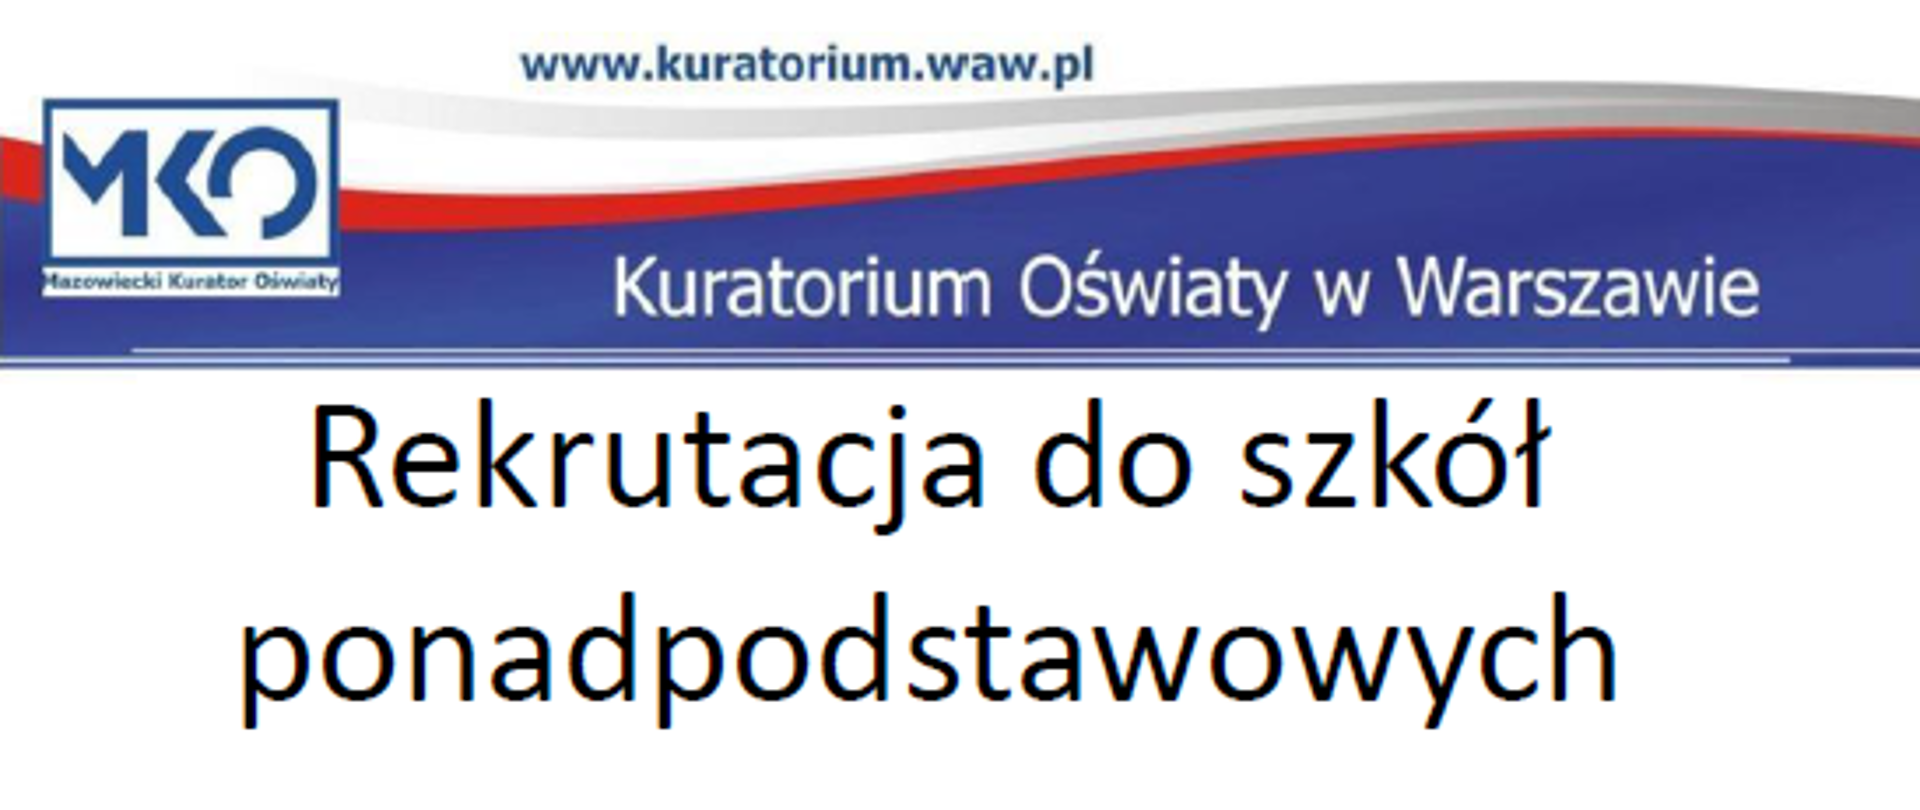 Kuratorium Oświaty w Warszawie. Rekrutacja do szkół ponadpodstawowych